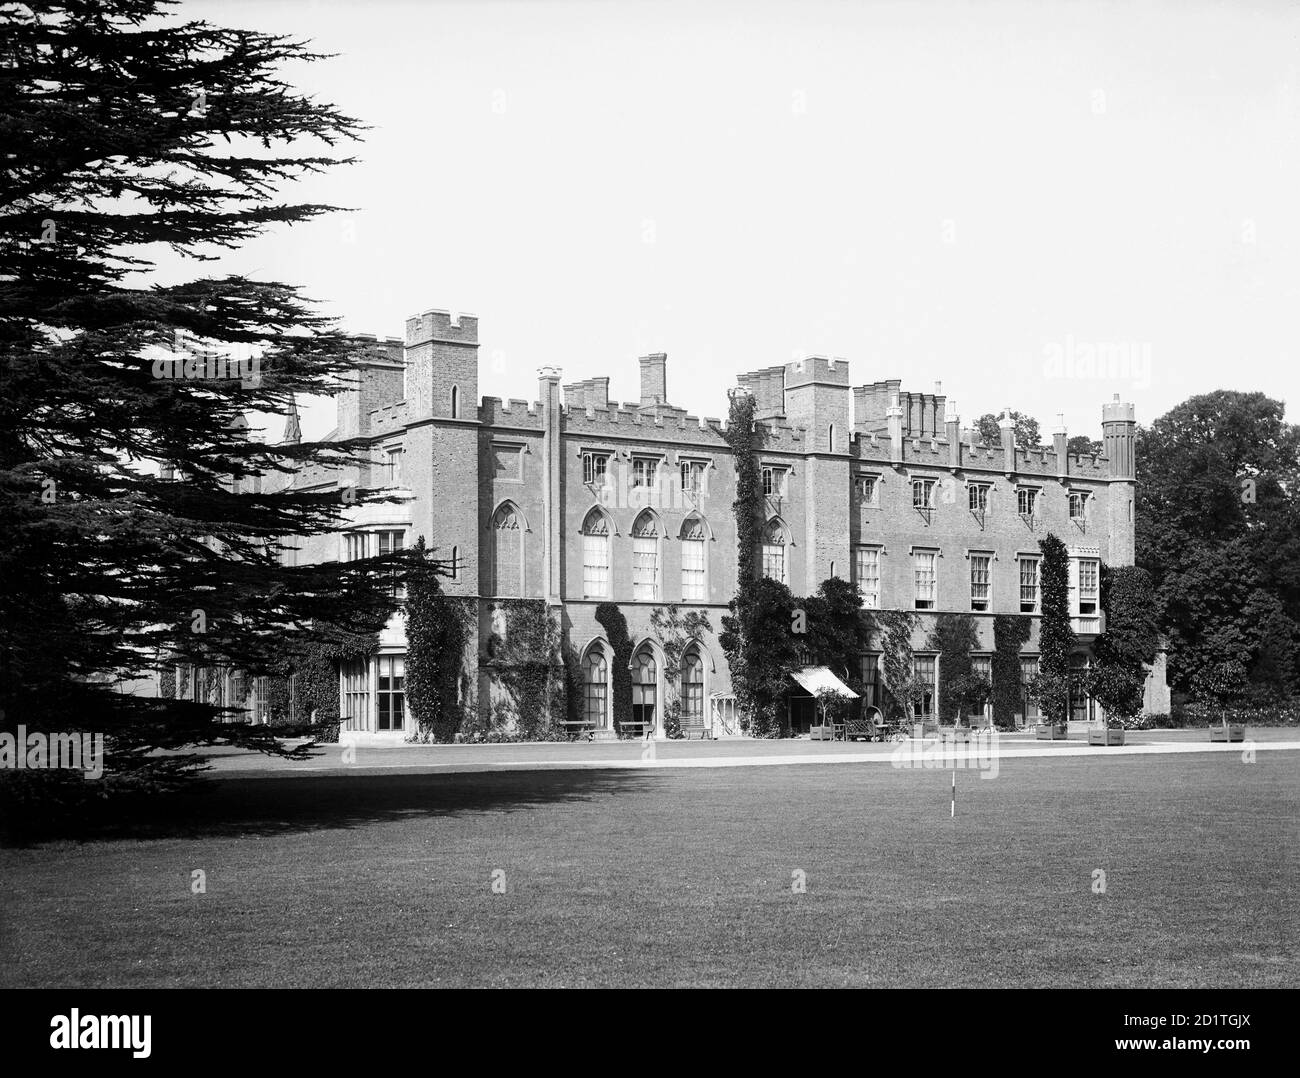 CASSIOBURY HOUSE, Cassiobury Park, Watford, Hertfordshire. Vue vers la maison depuis le sud-est. Le manoir élisabéthain, qui a été réaménagé par Hugh May en 1675 et par James Wyatt vers 1800, a été démoli au XXe siècle, laissant le parc environnant utilisé comme parc public. Photographié en 1883 par Henry Taunt. Banque D'Images